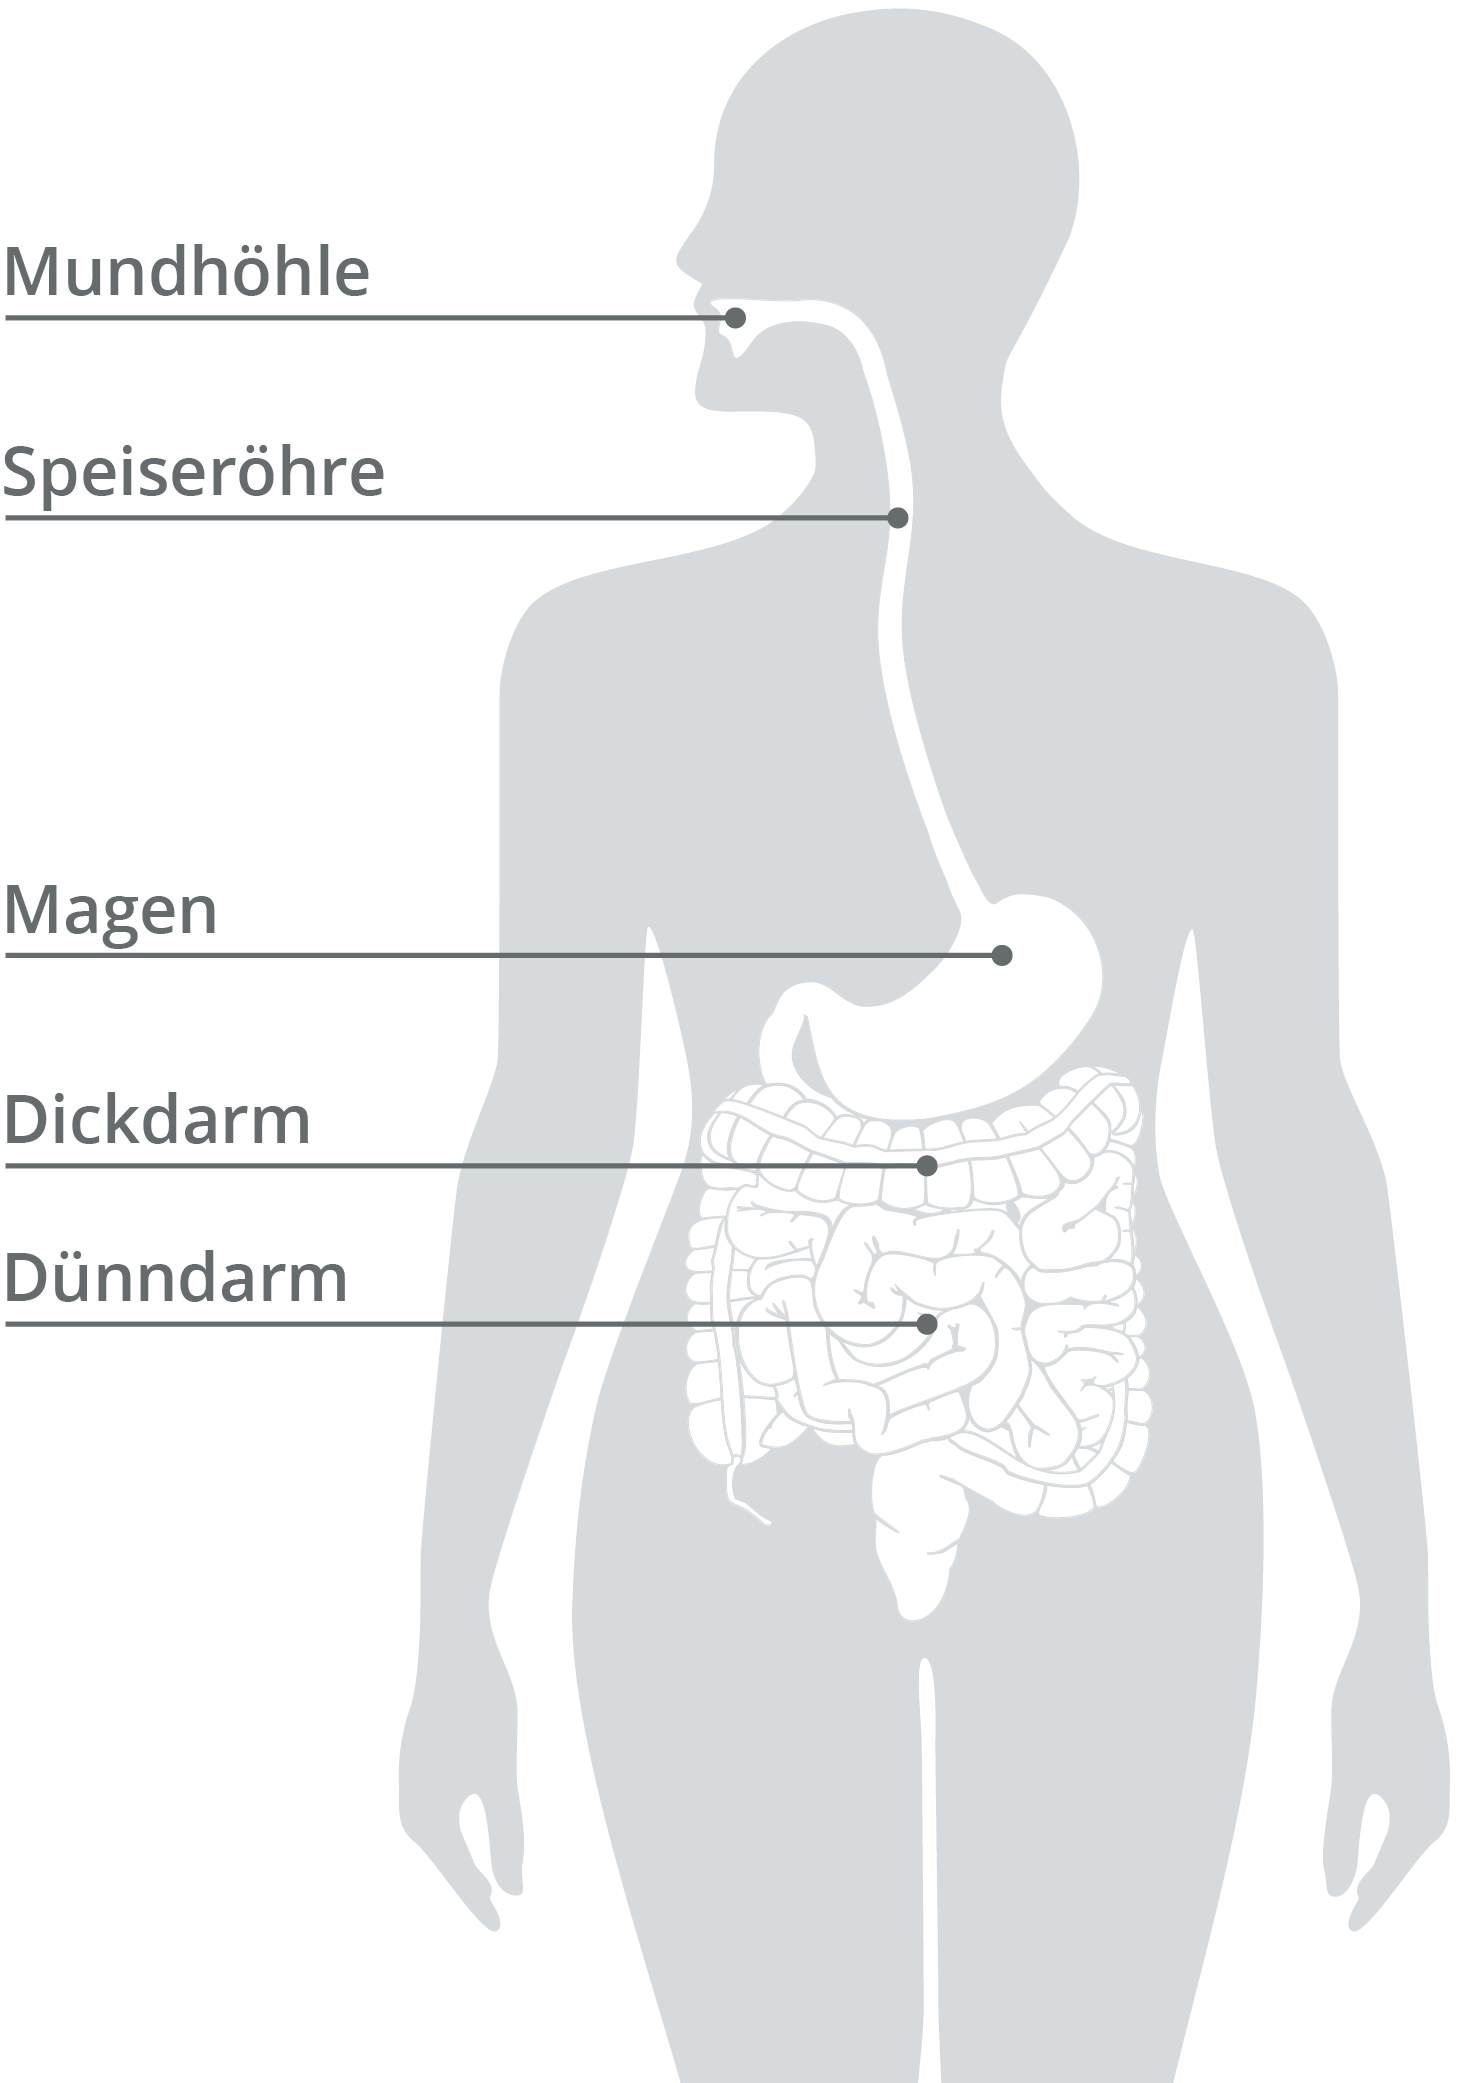 Der Weg der Nahrung durch die verschiedenen Organe, wie die Mundhöhle, die Speiseröhre, der Magen sowie Dick- und Dünndarm.